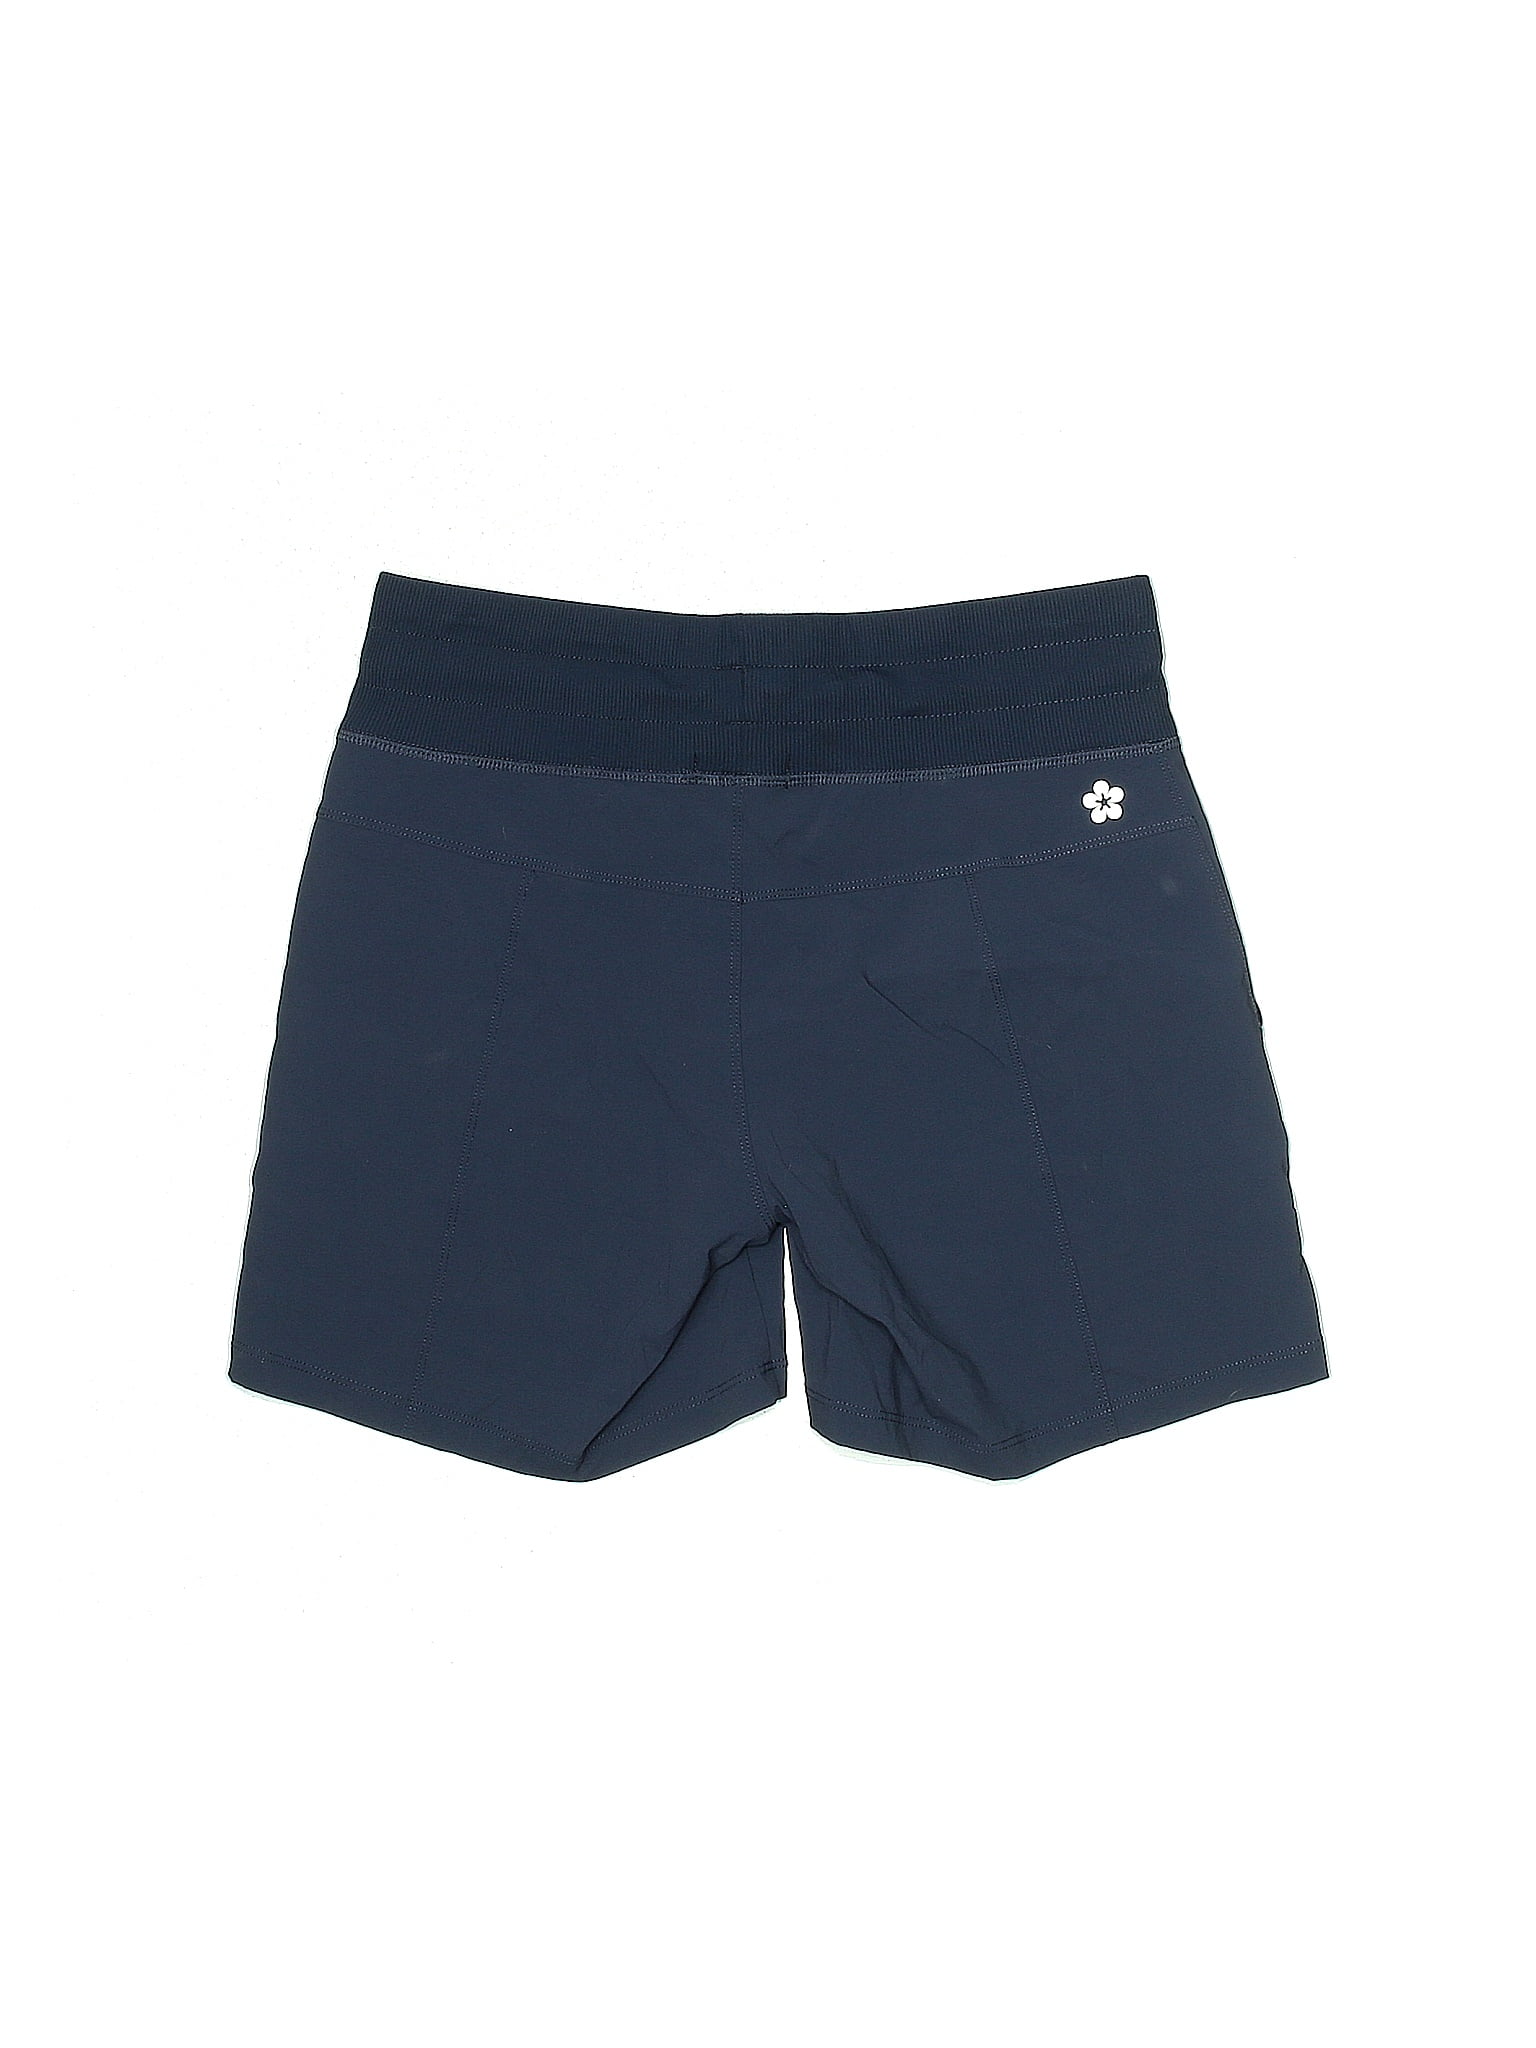 Tuff Athletics Blue Athletic Shorts Size S - 56% off